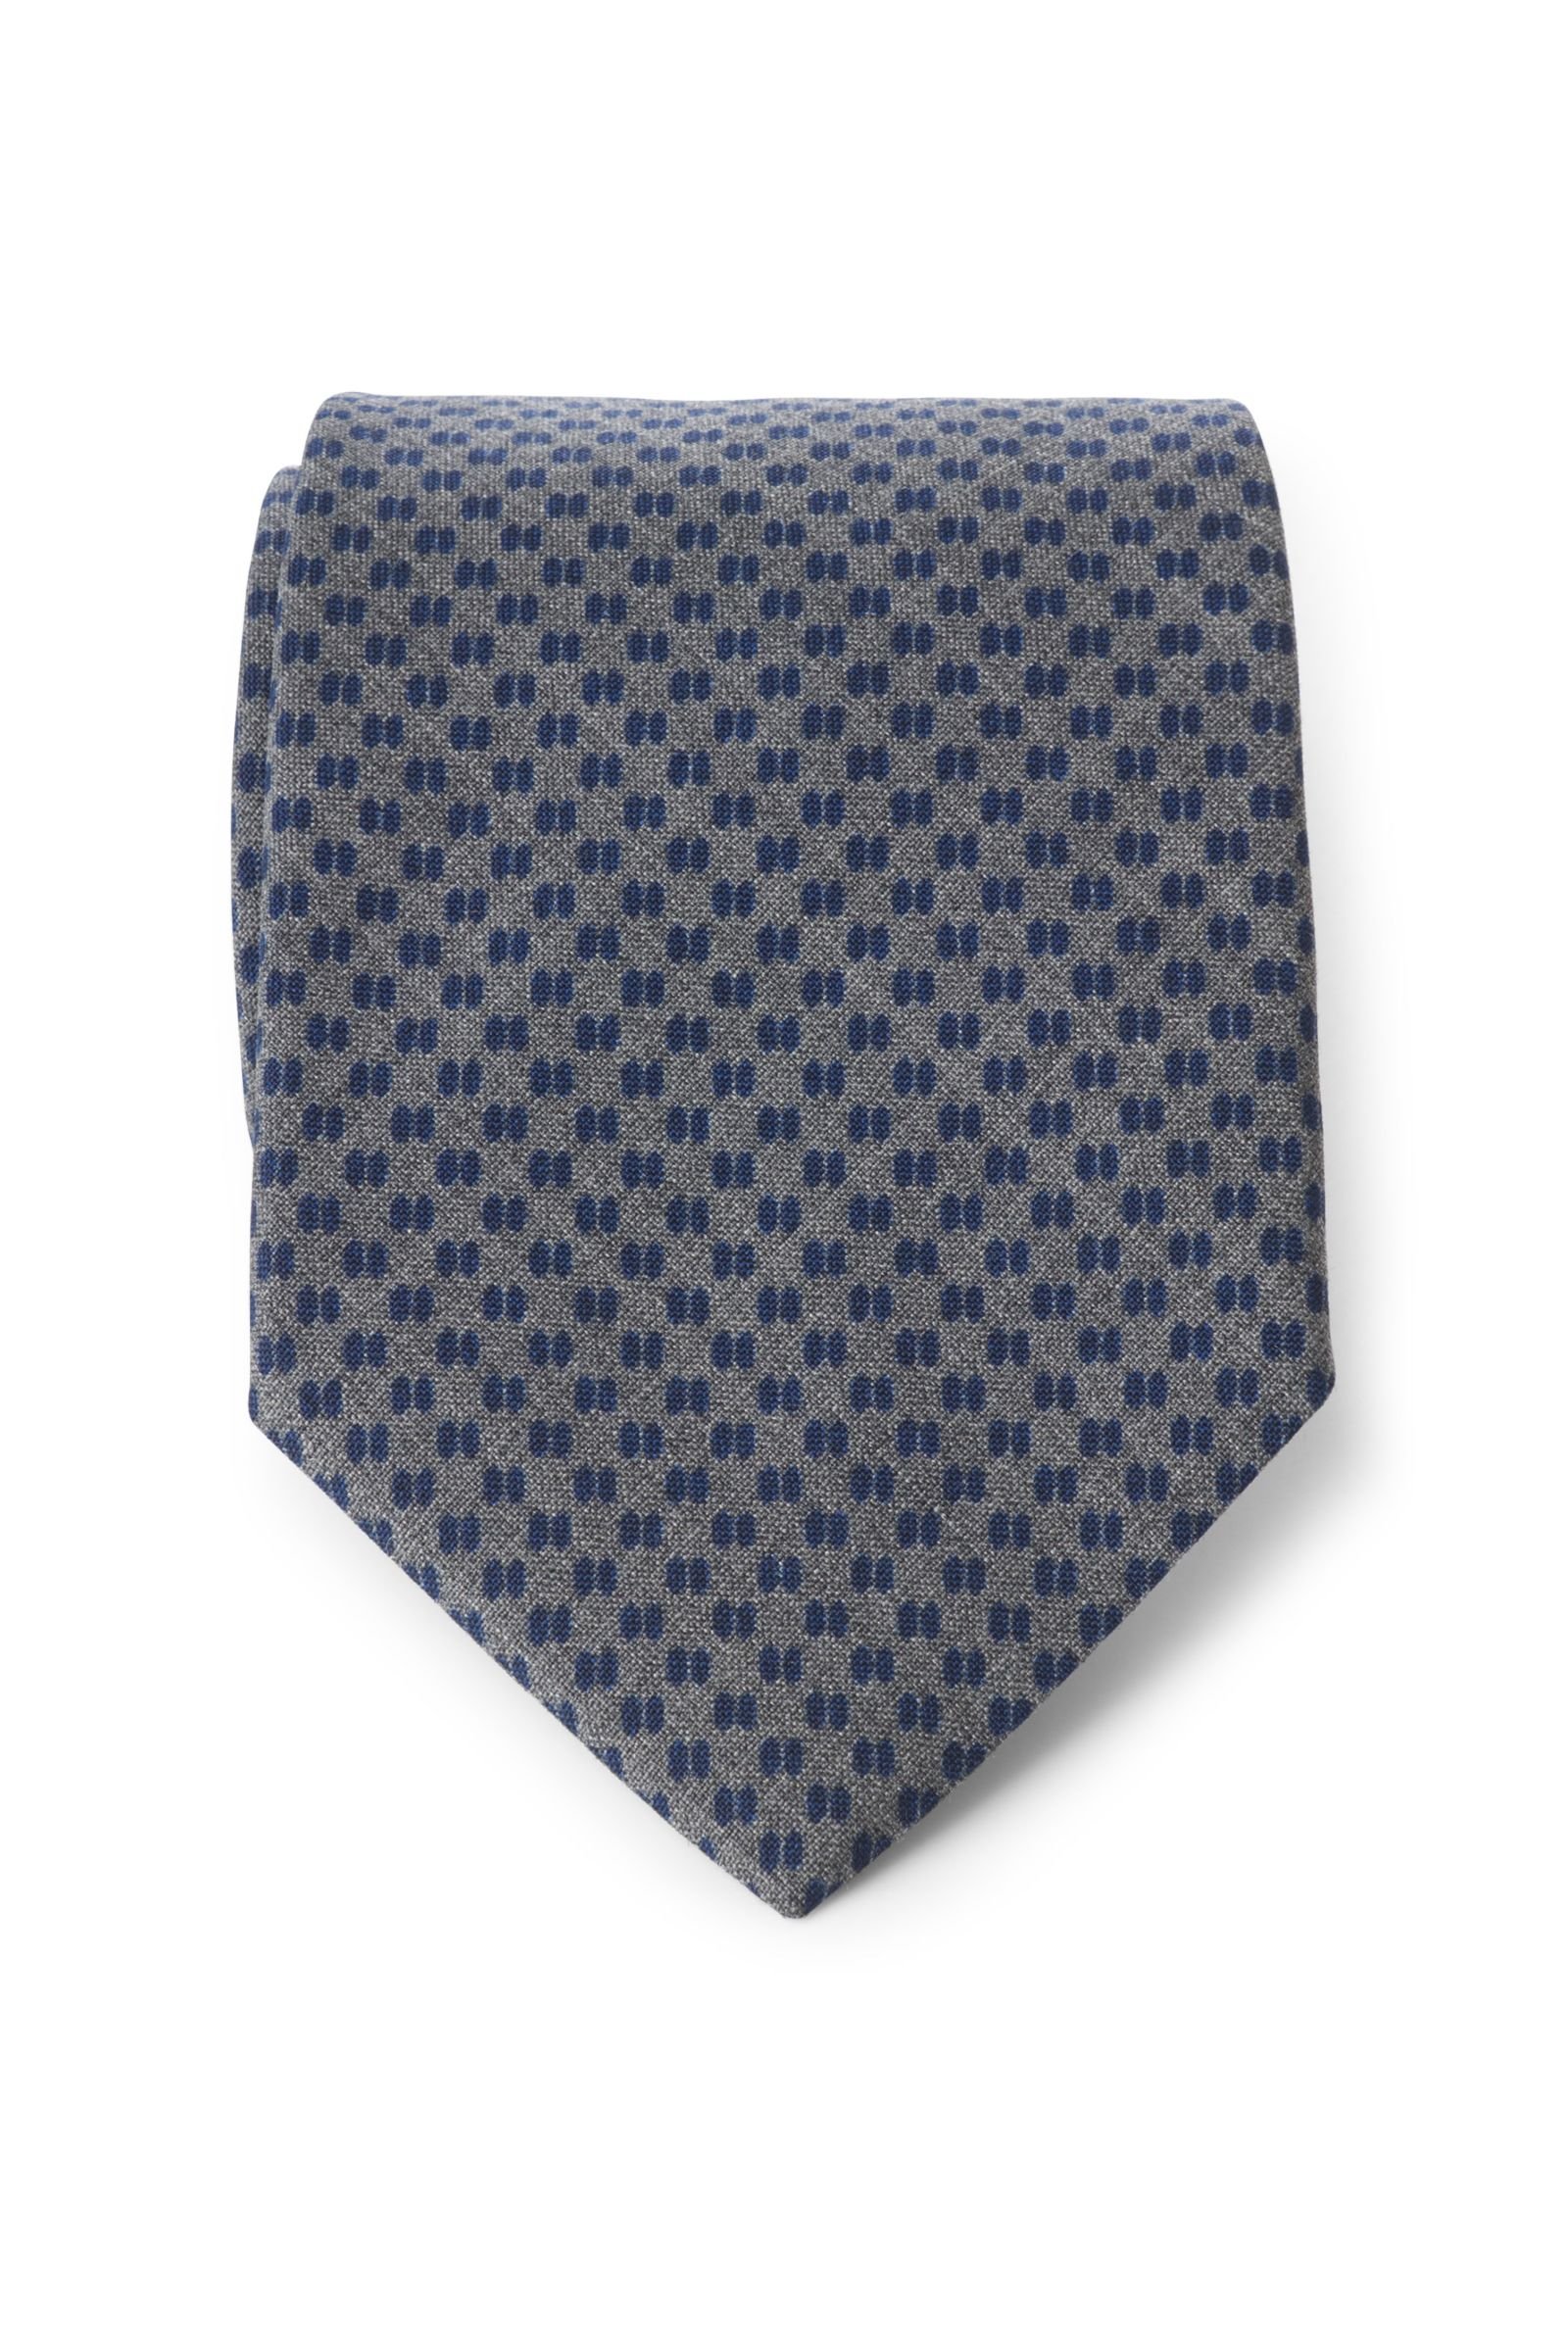 Wool tie grey/navy patterned